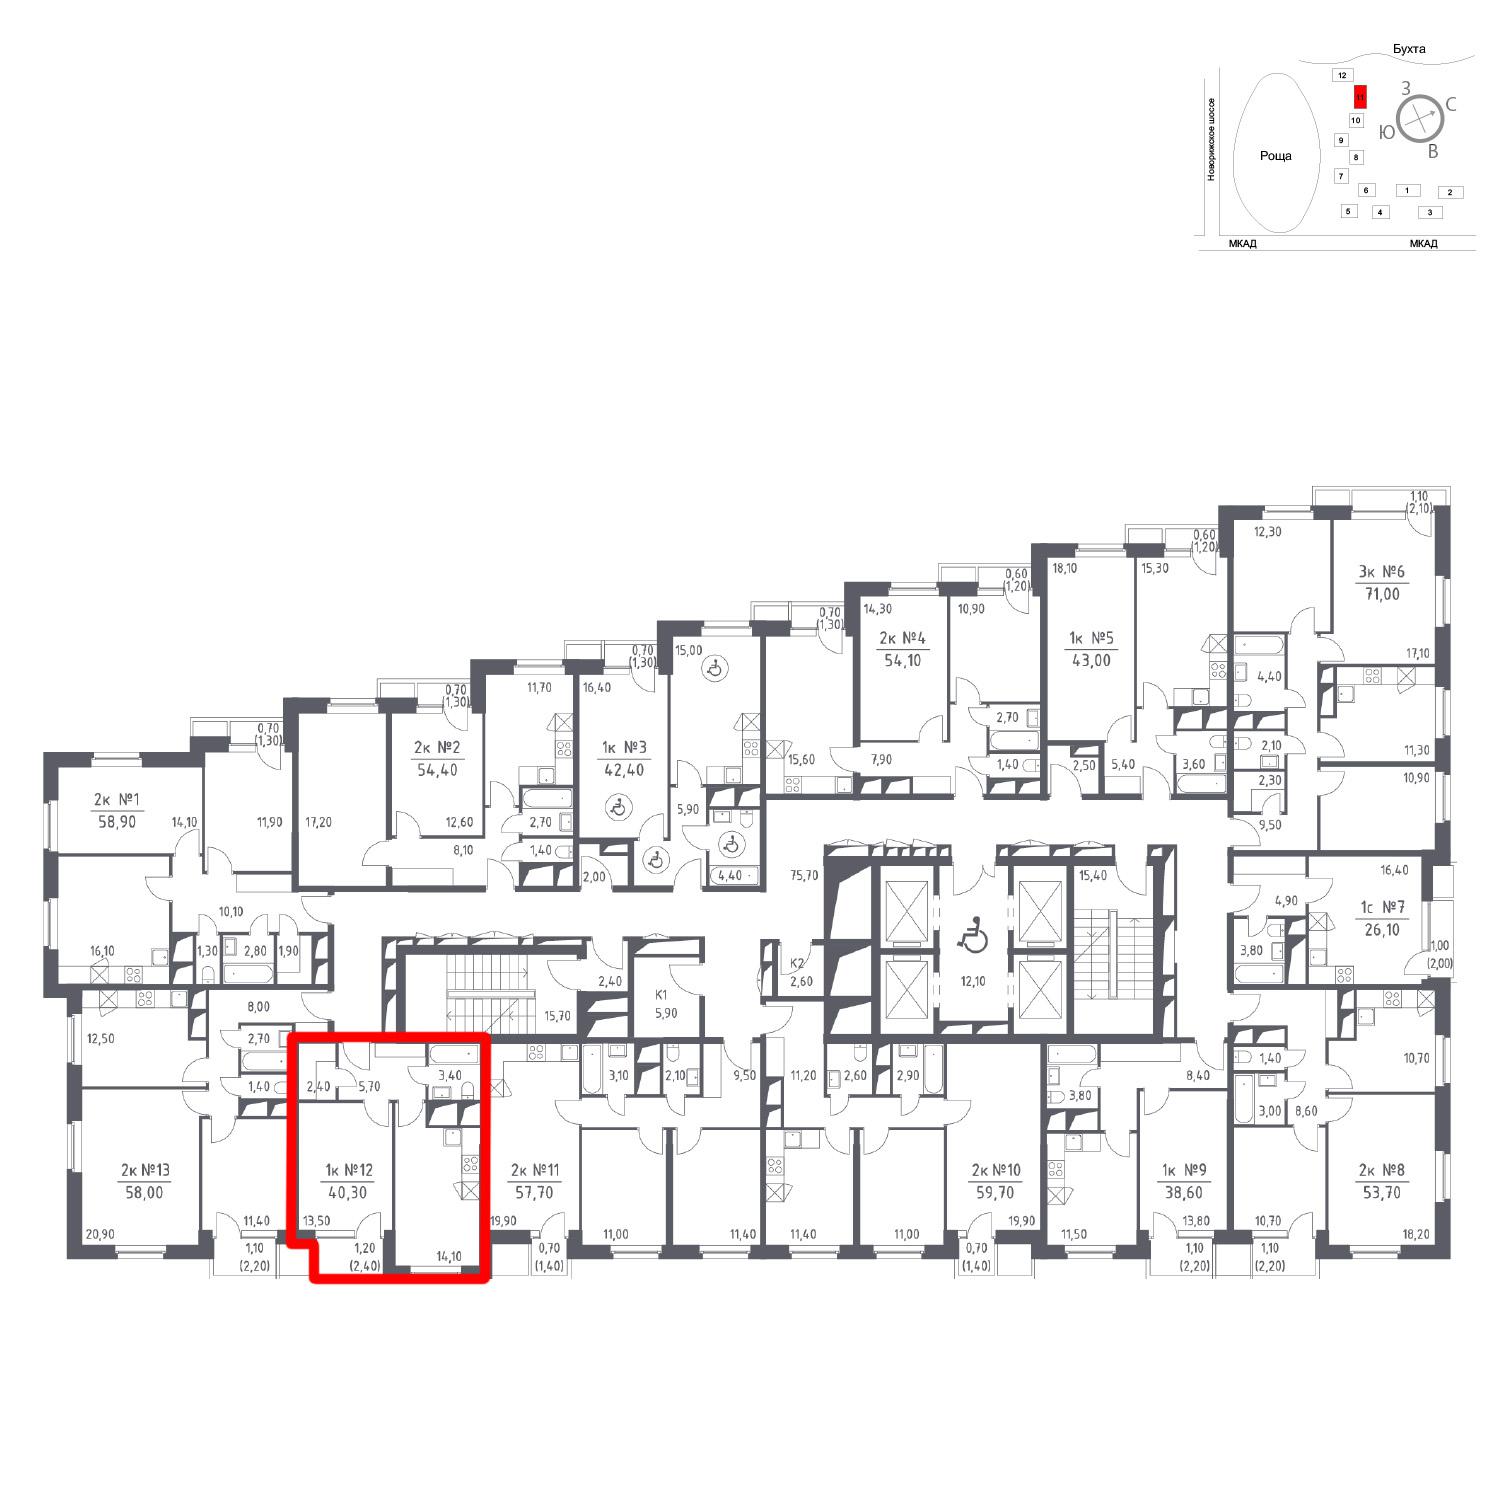 Продаётся 1-комнатная квартира в новостройке 40.3 кв.м. этаж 23/33 за 0 руб 